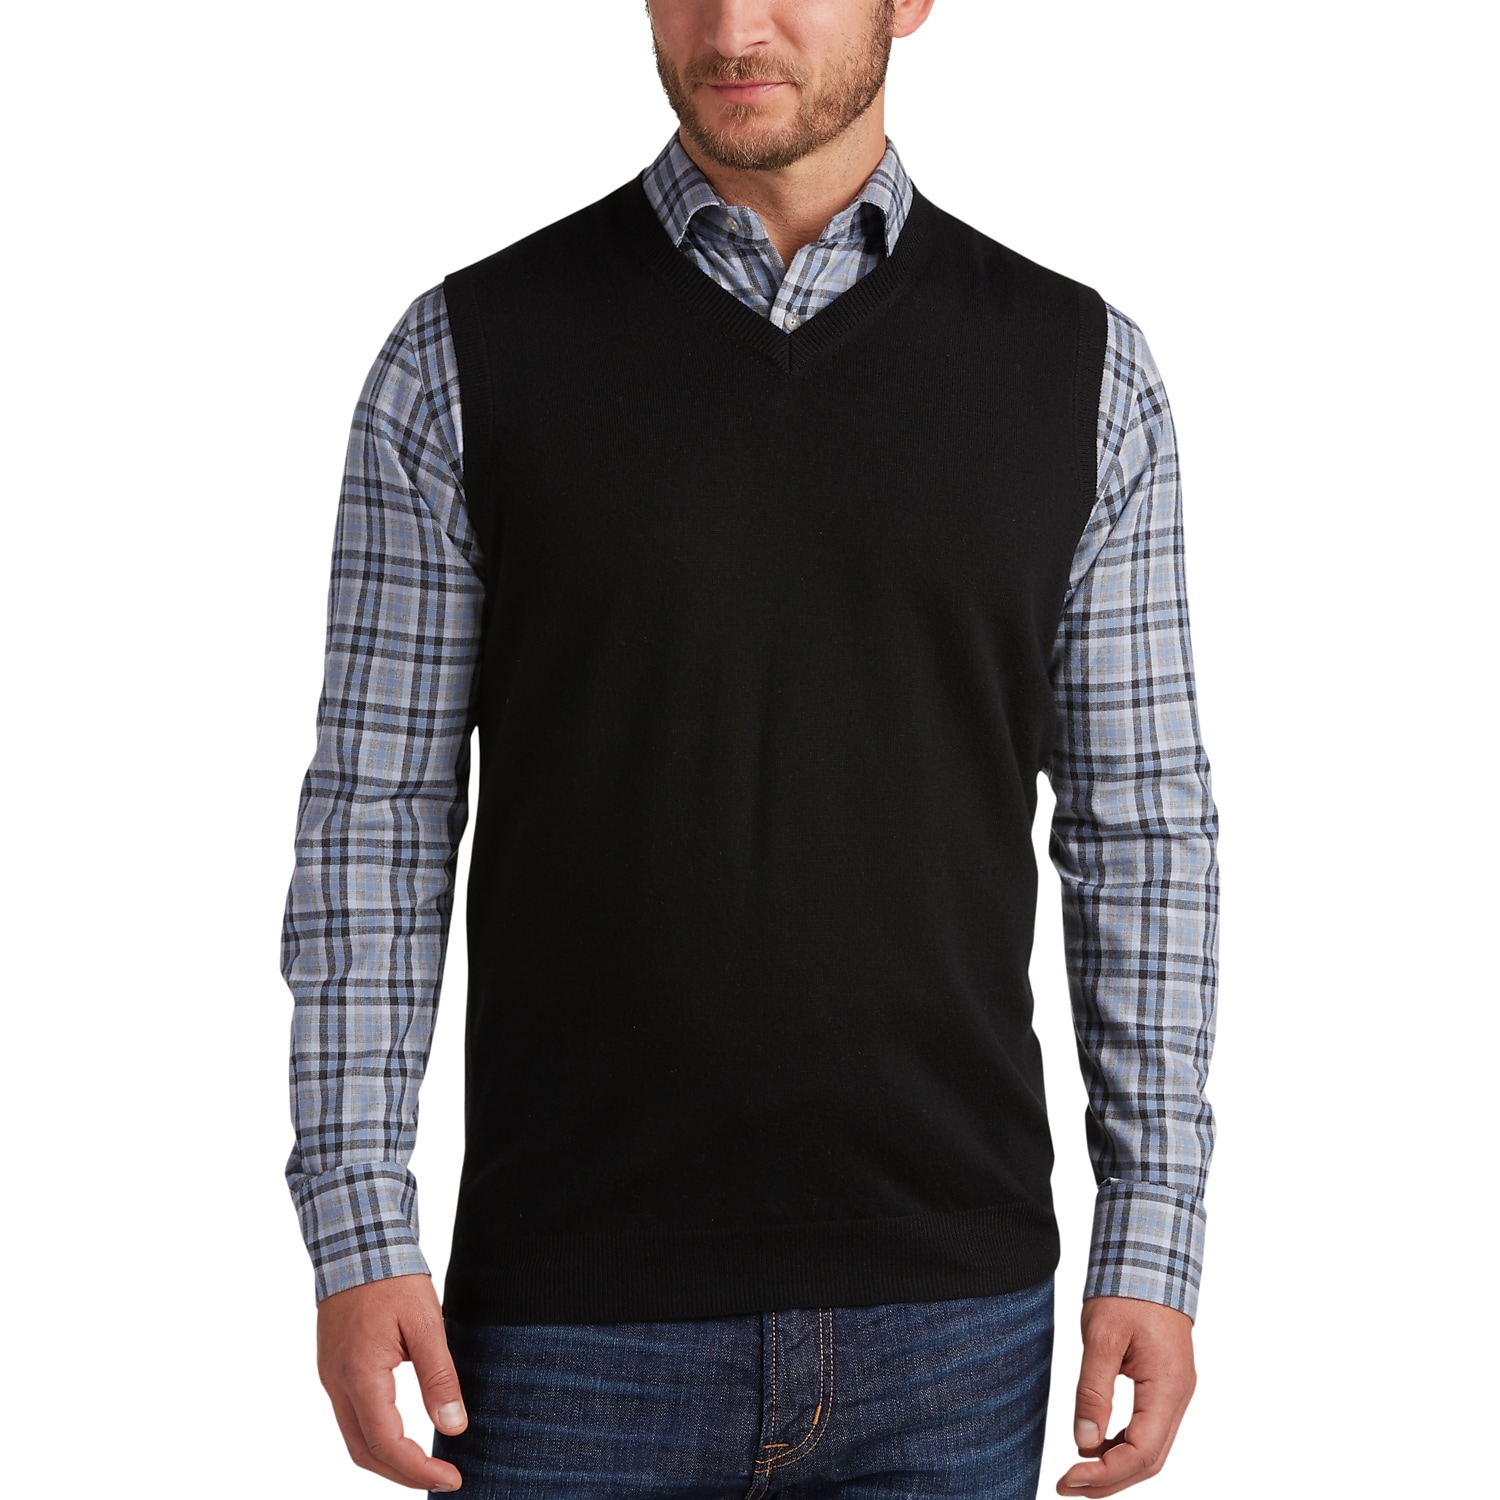 Sweater Vests - Men's Sweater Vests | Men's Wearhouse